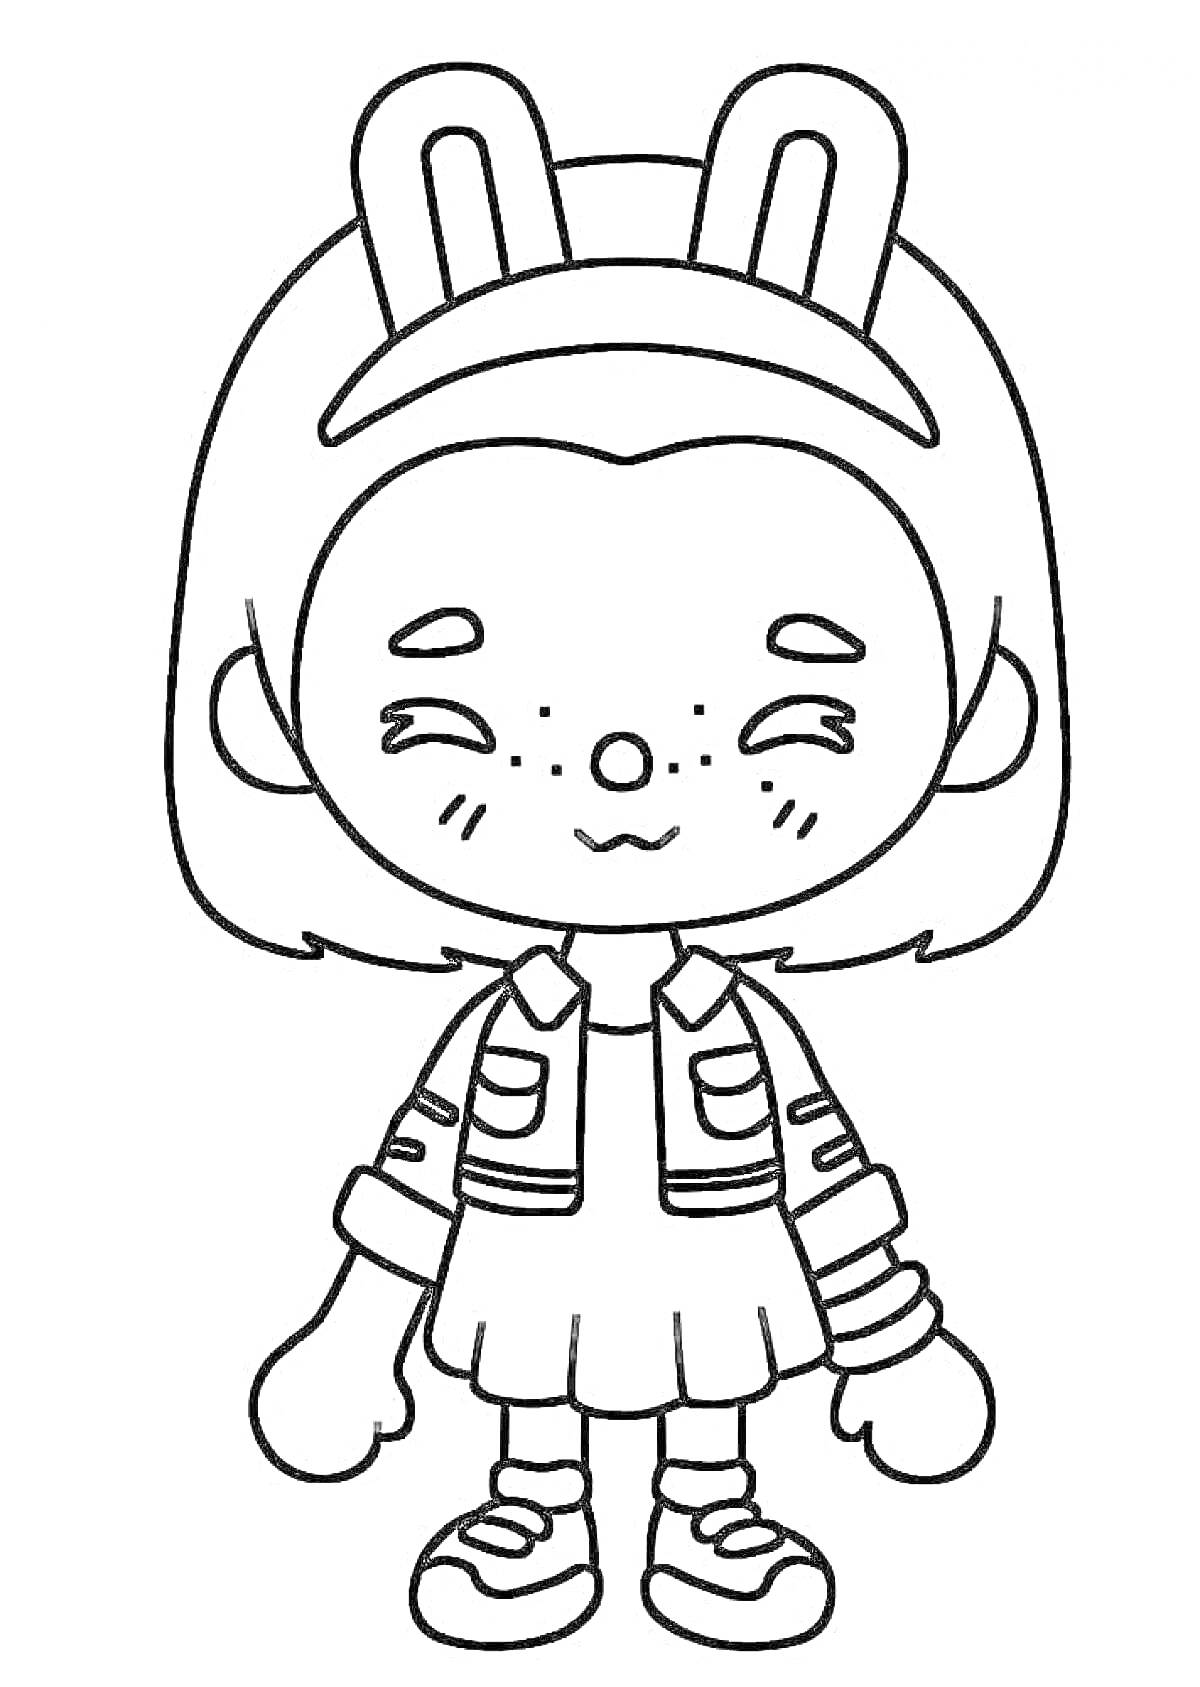 Раскраска Девочка с кроличьими ушками на ободке, в куртке и юбке, в кроссовках, с веснушками